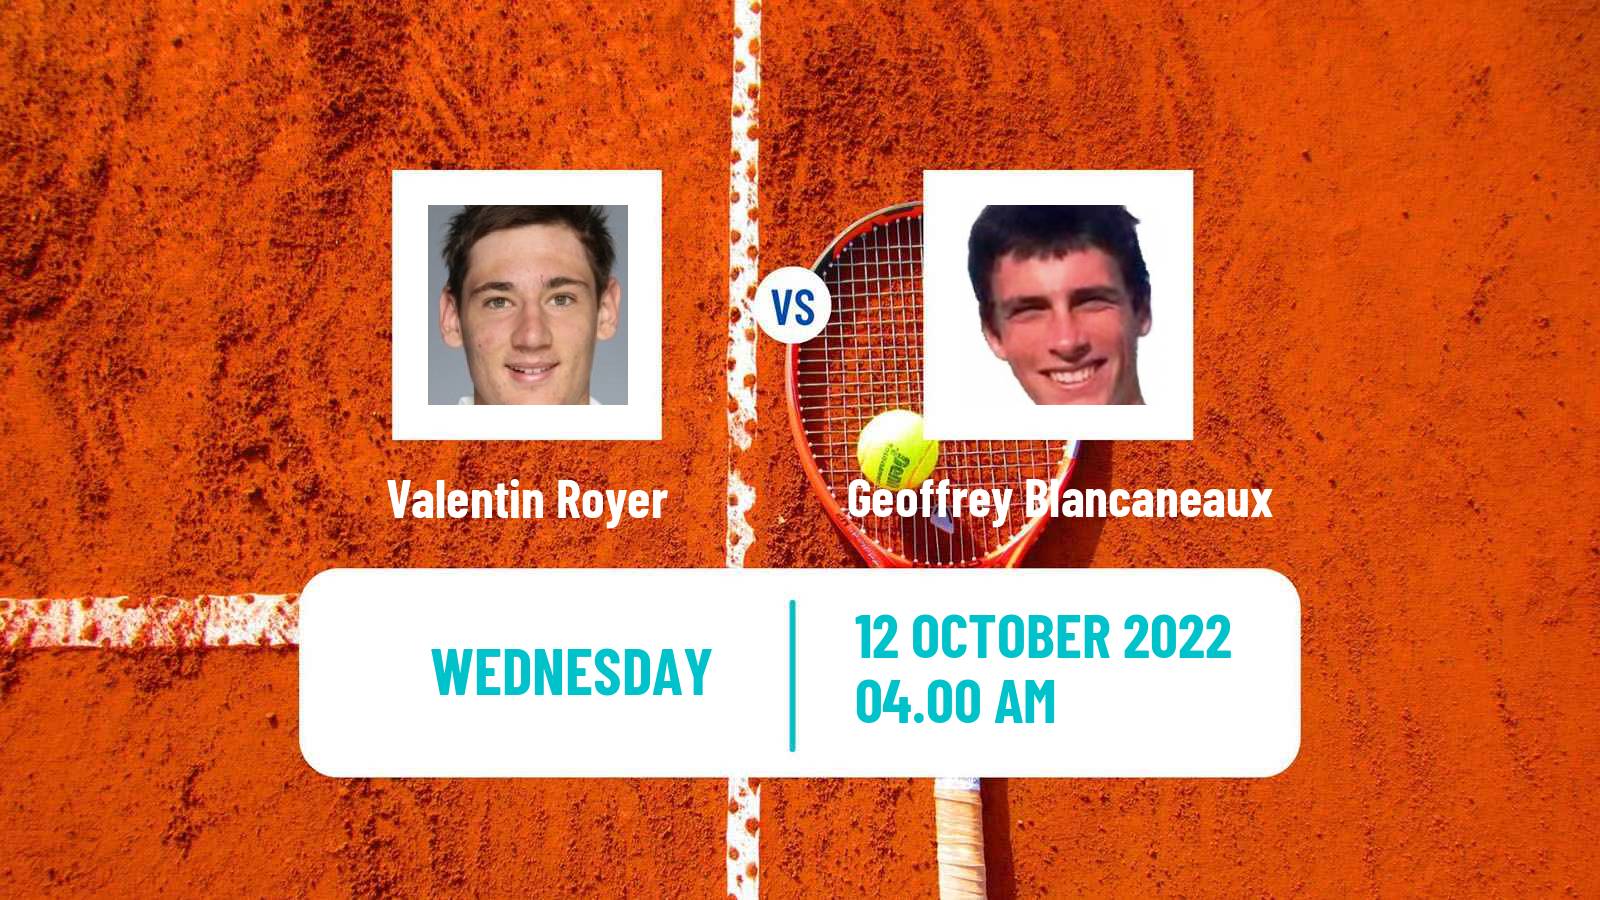 Tennis ATP Challenger Valentin Royer - Geoffrey Blancaneaux